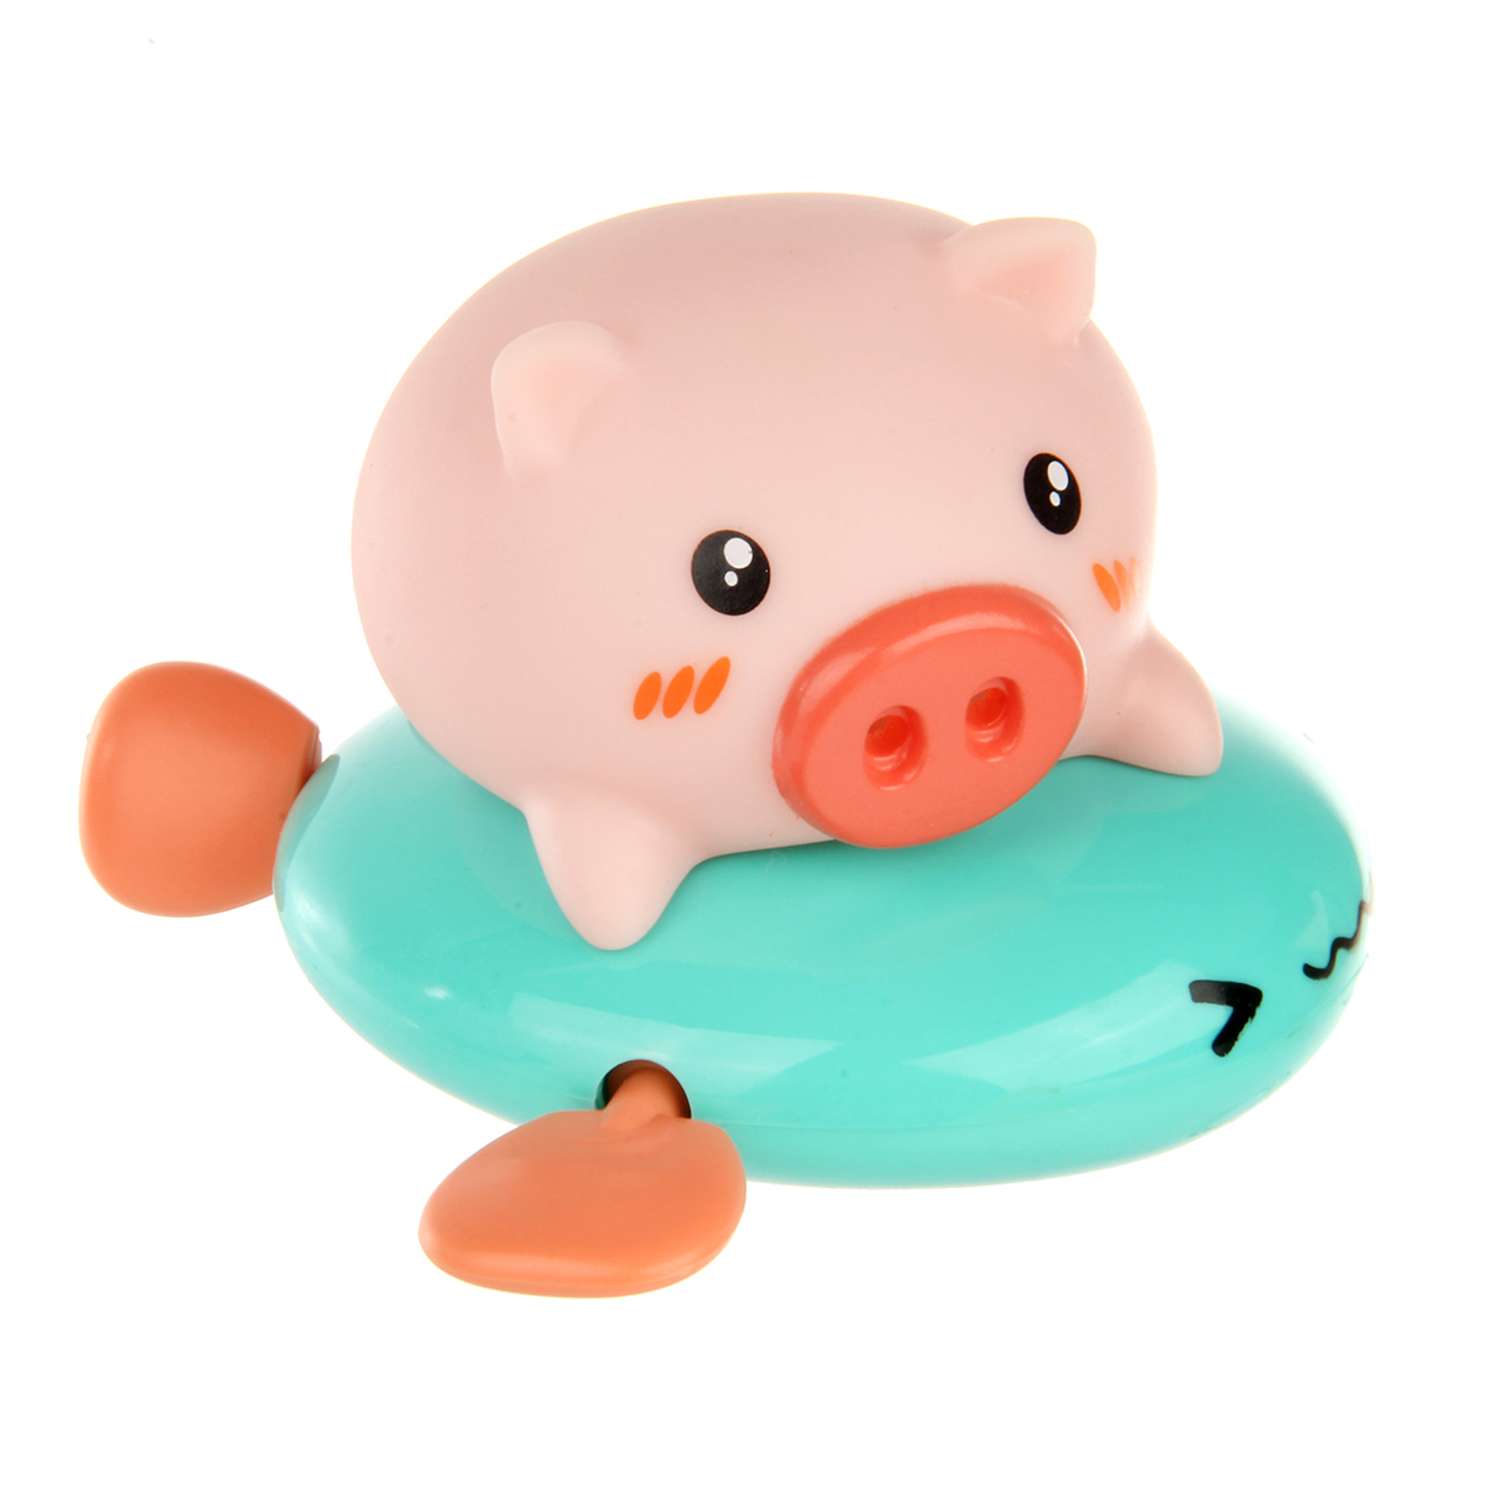 Игрушка для купания Ути Пути Свинка голубая на подушке - фото 1